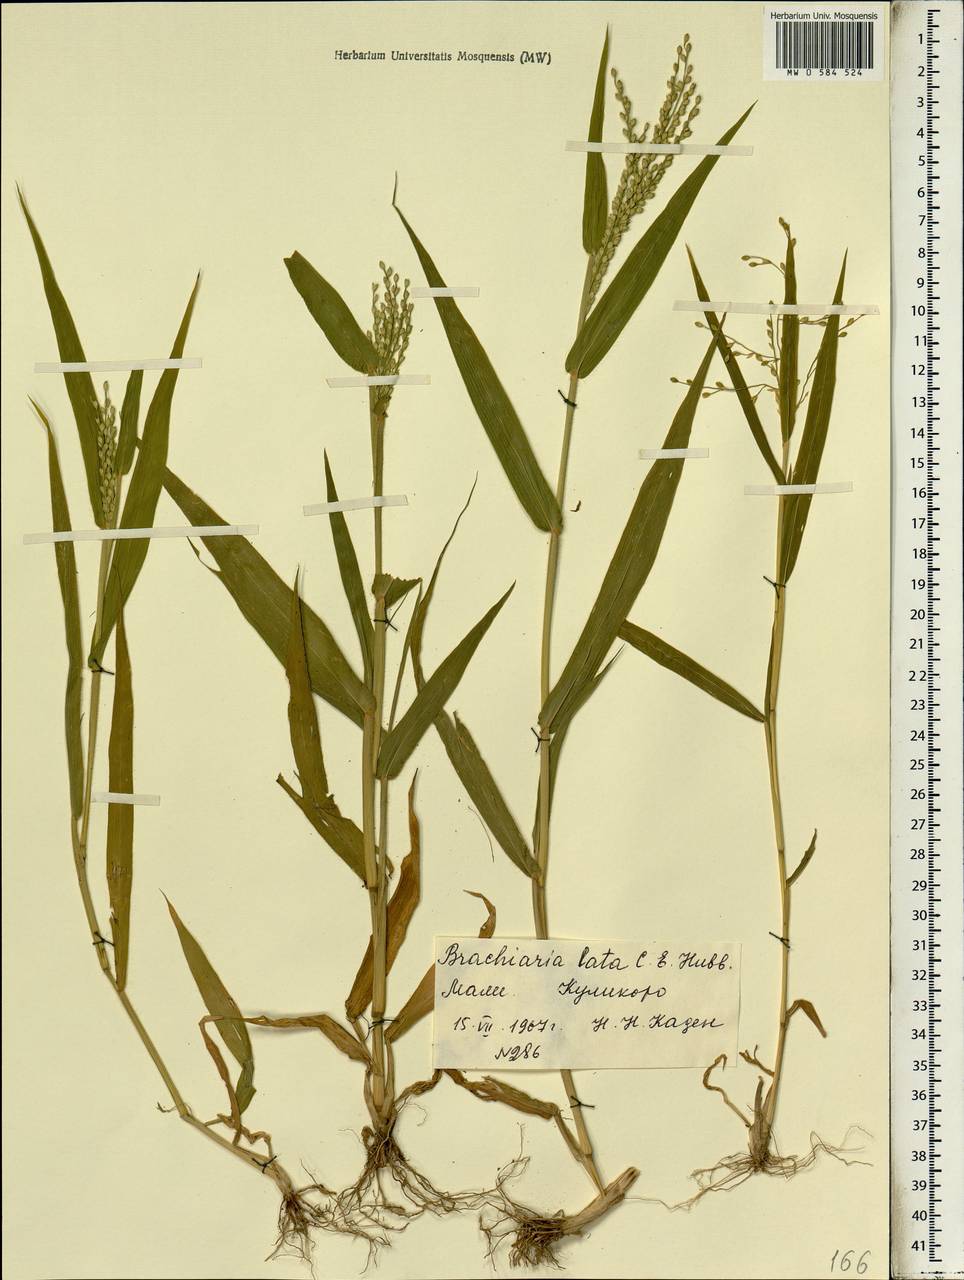 Brachiaria lata (Schumach.) C.E.Hubb., Африка (AFR) (Мали)